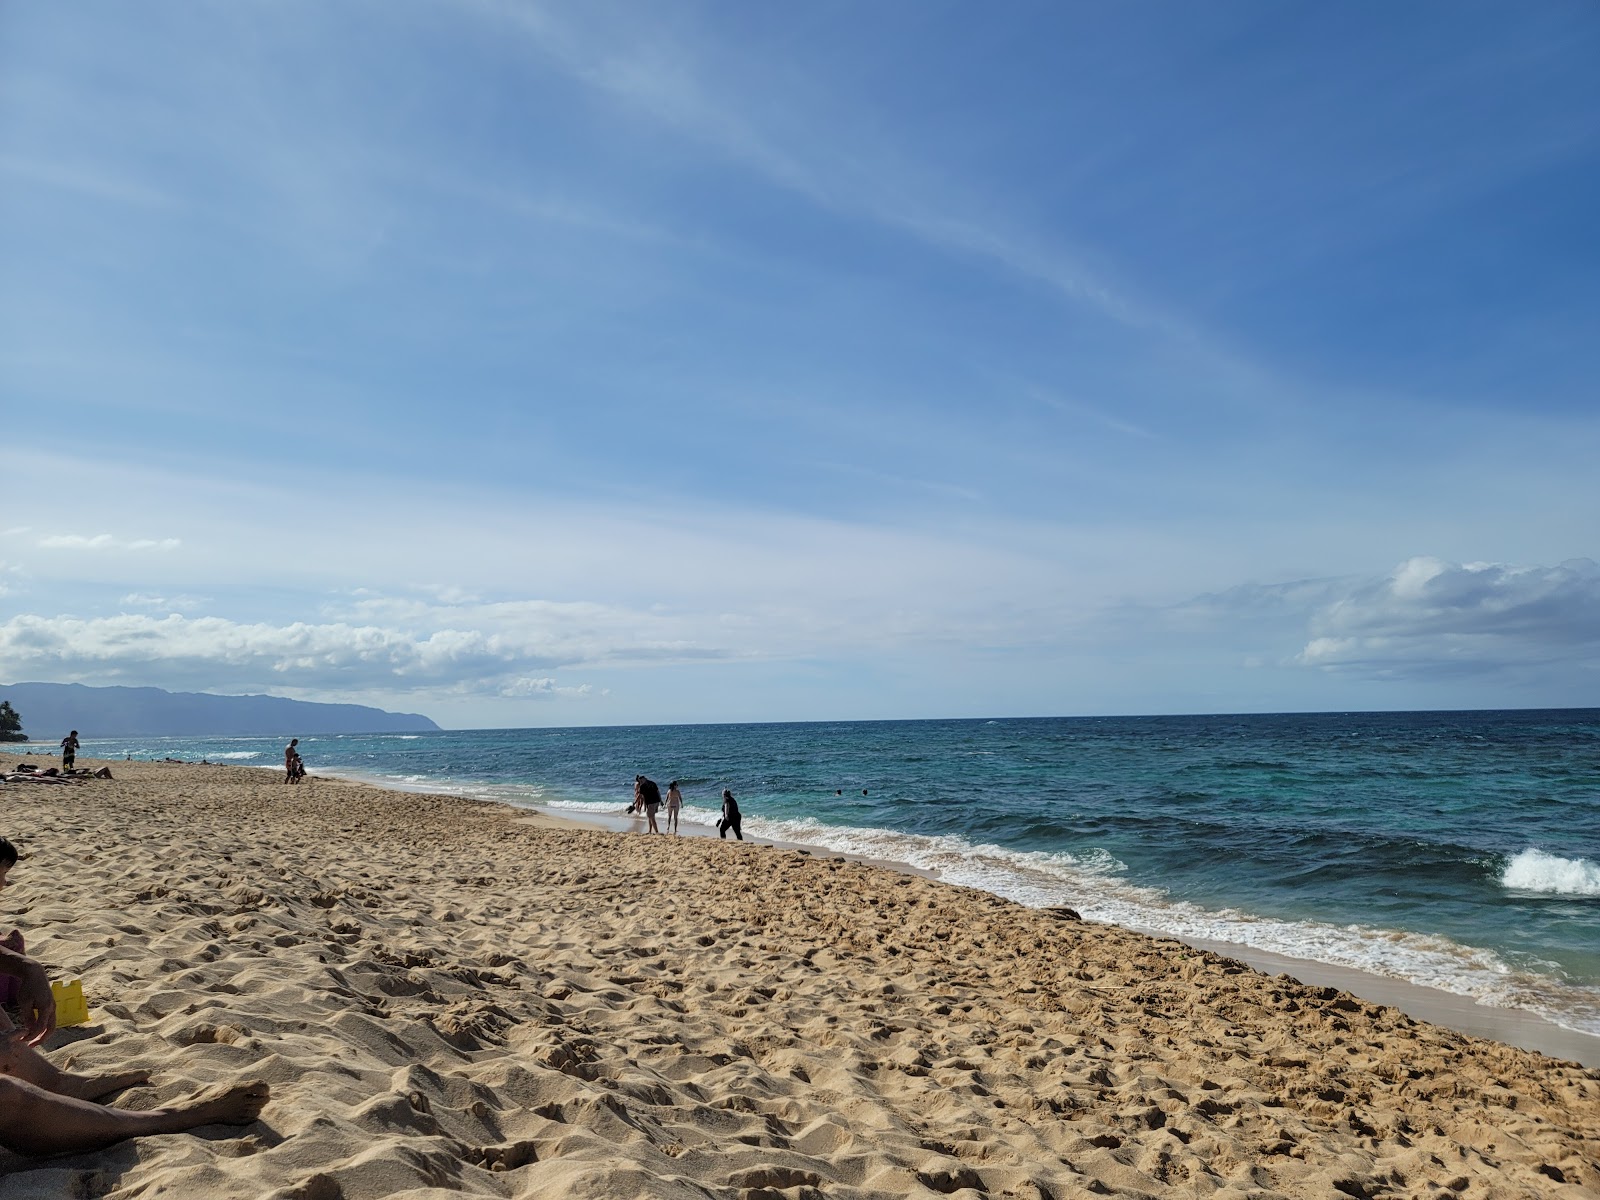 Laniakea Beach'in fotoğrafı geniş plaj ile birlikte